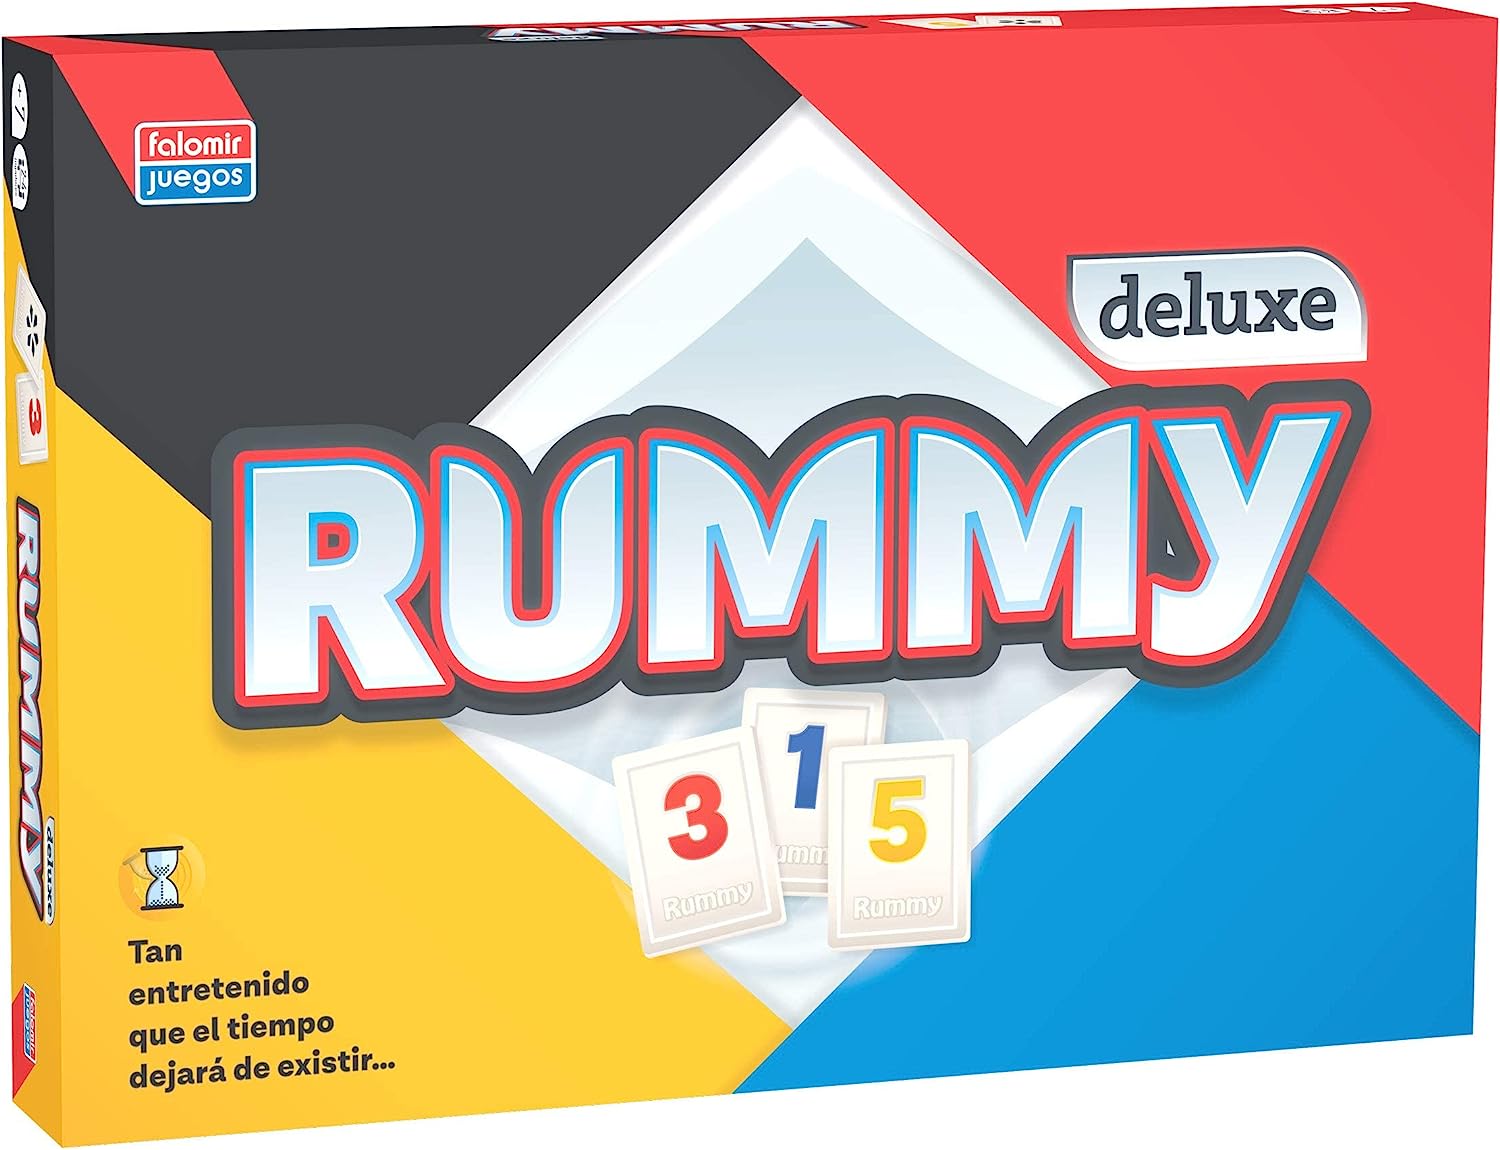 Ver categoría de rummy deluxe